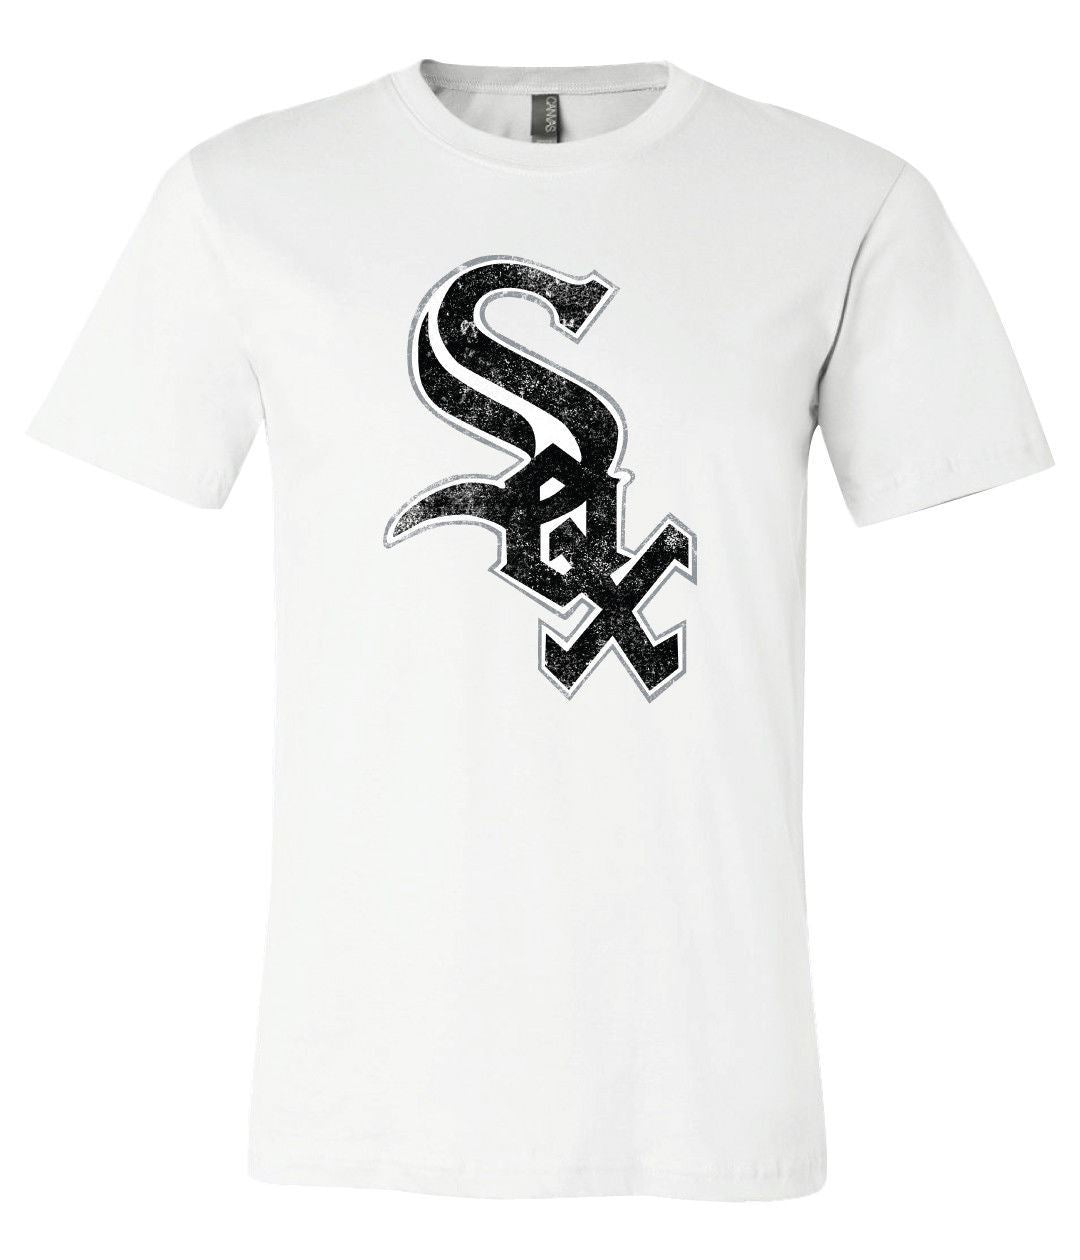 White Sox Retro - Chicago White Sox - T-Shirt